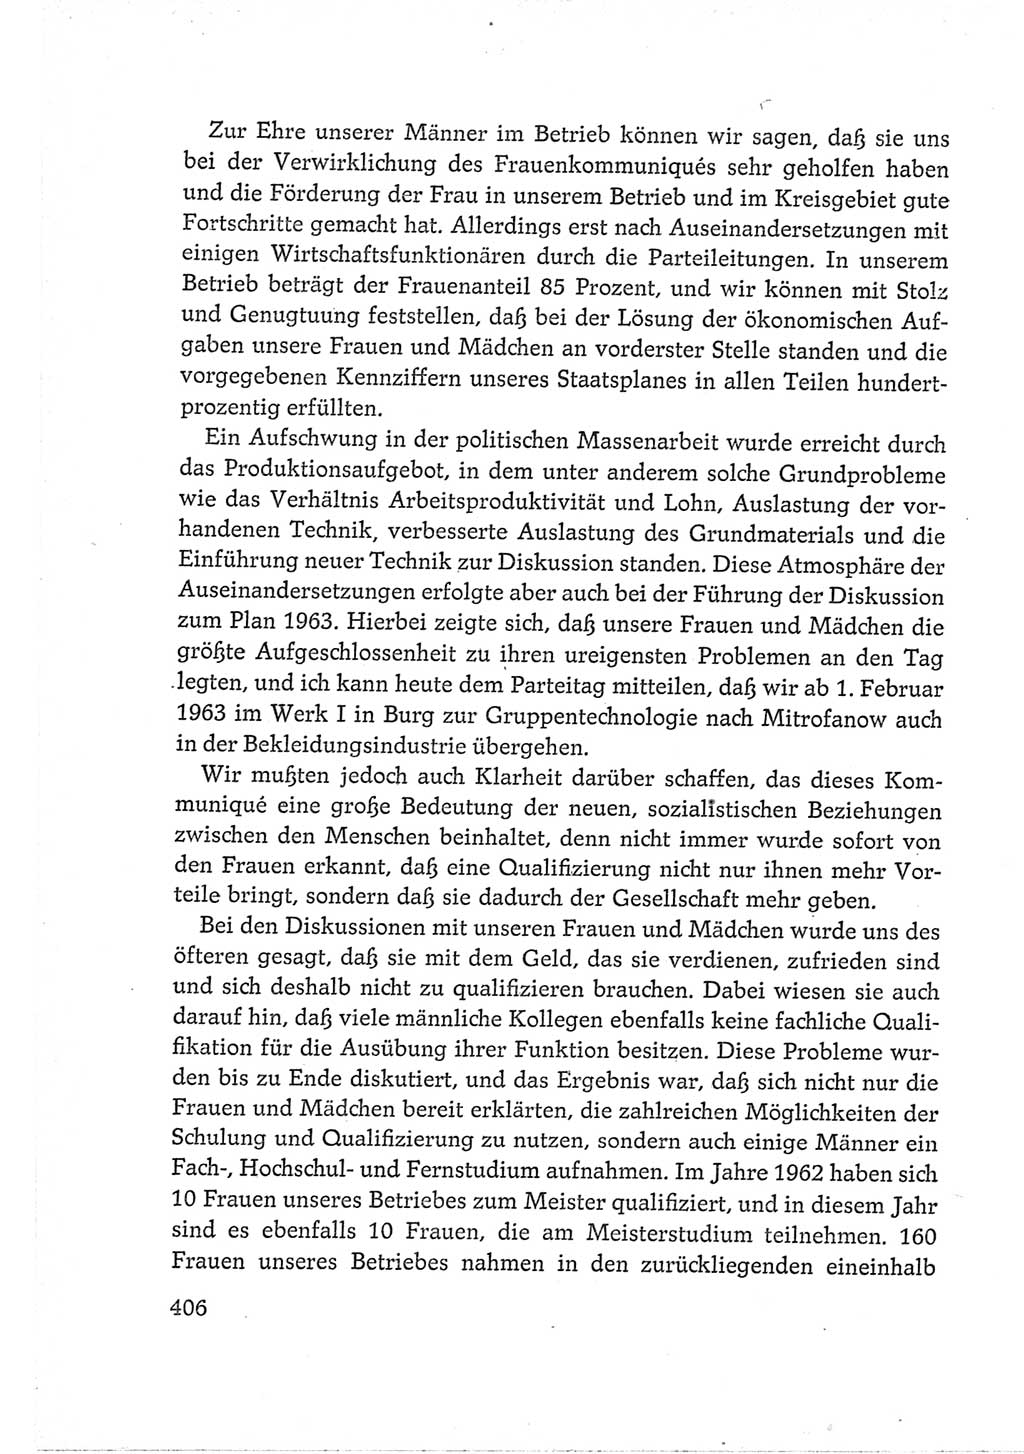 Protokoll der Verhandlungen des Ⅵ. Parteitages der Sozialistischen Einheitspartei Deutschlands (SED) [Deutsche Demokratische Republik (DDR)] 1963, Band Ⅲ, Seite 406 (Prot. Verh. Ⅵ. PT SED DDR 1963, Bd. Ⅲ, S. 406)